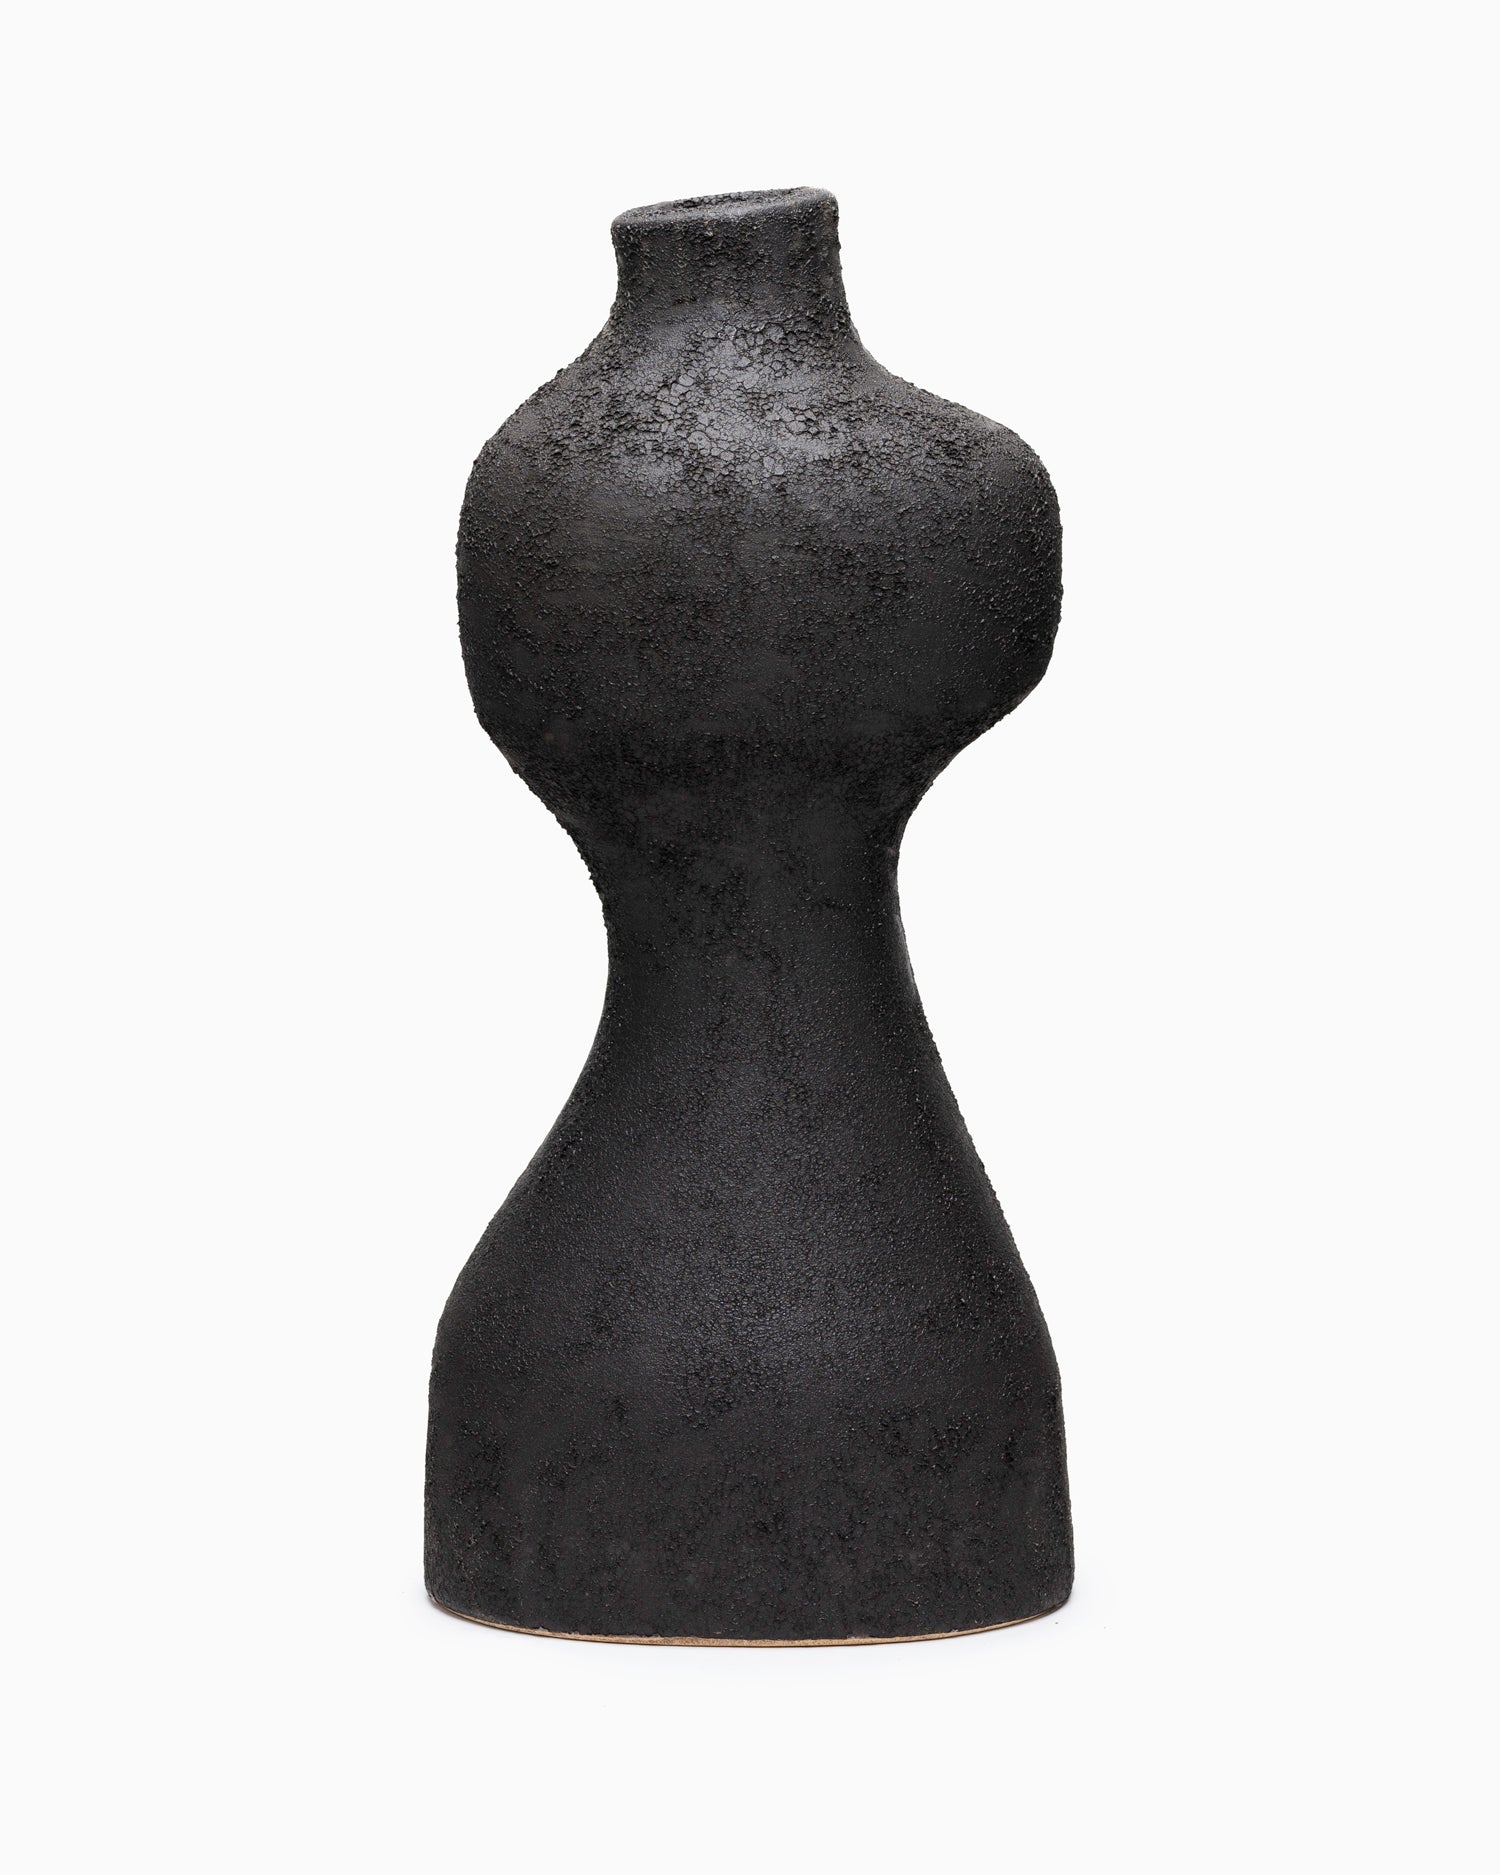 Medium Yara Vase - Rustic Iron